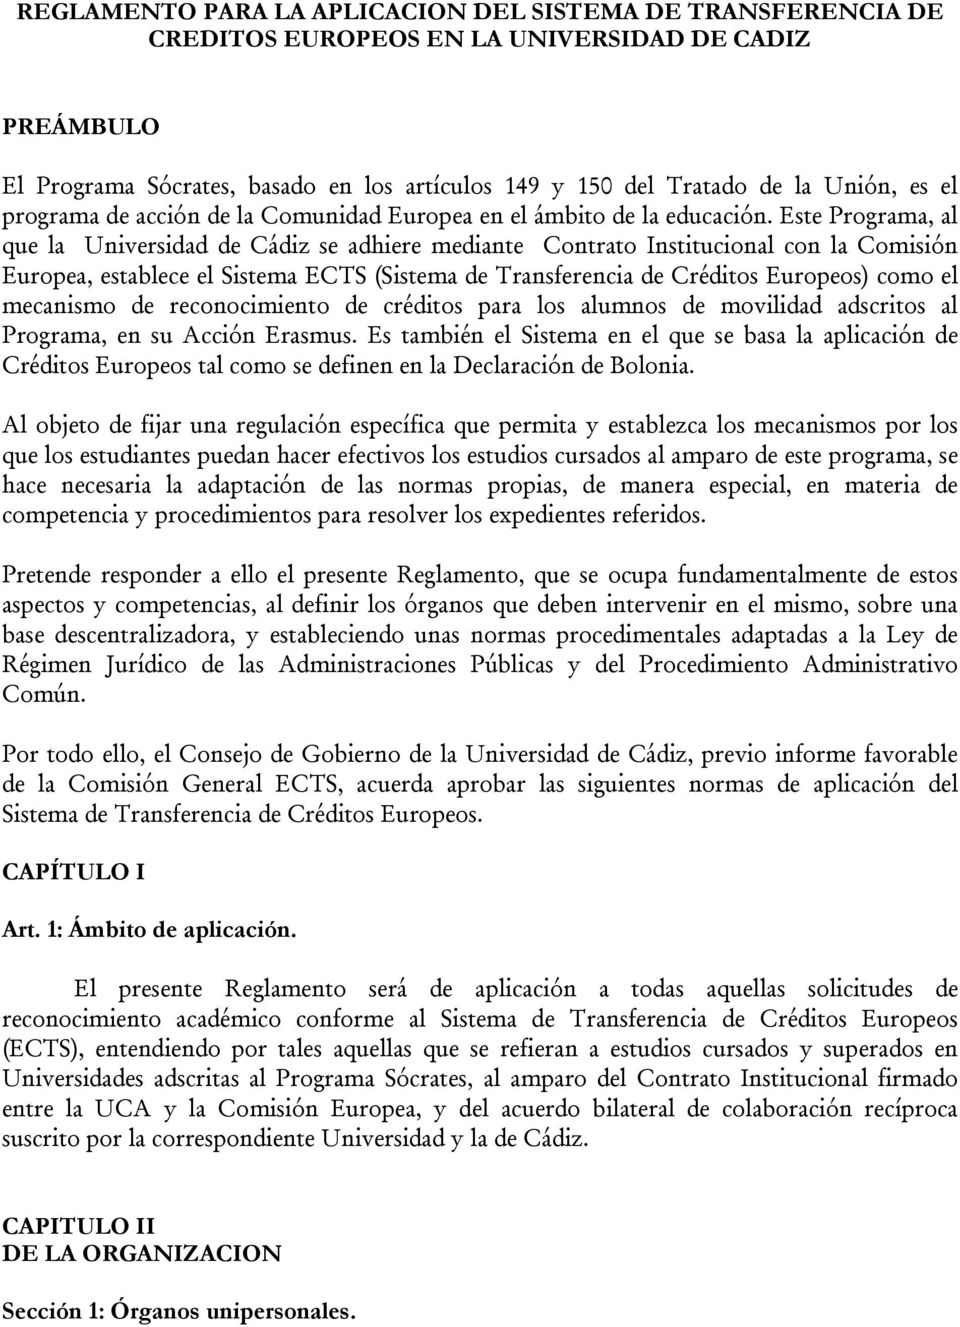 Este Programa, al que la Universidad de Cádiz se adhiere mediante Contrato Institucional con la Comisión Europea, establece el Sistema ECTS (Sistema de Transferencia de Créditos Europeos) como el